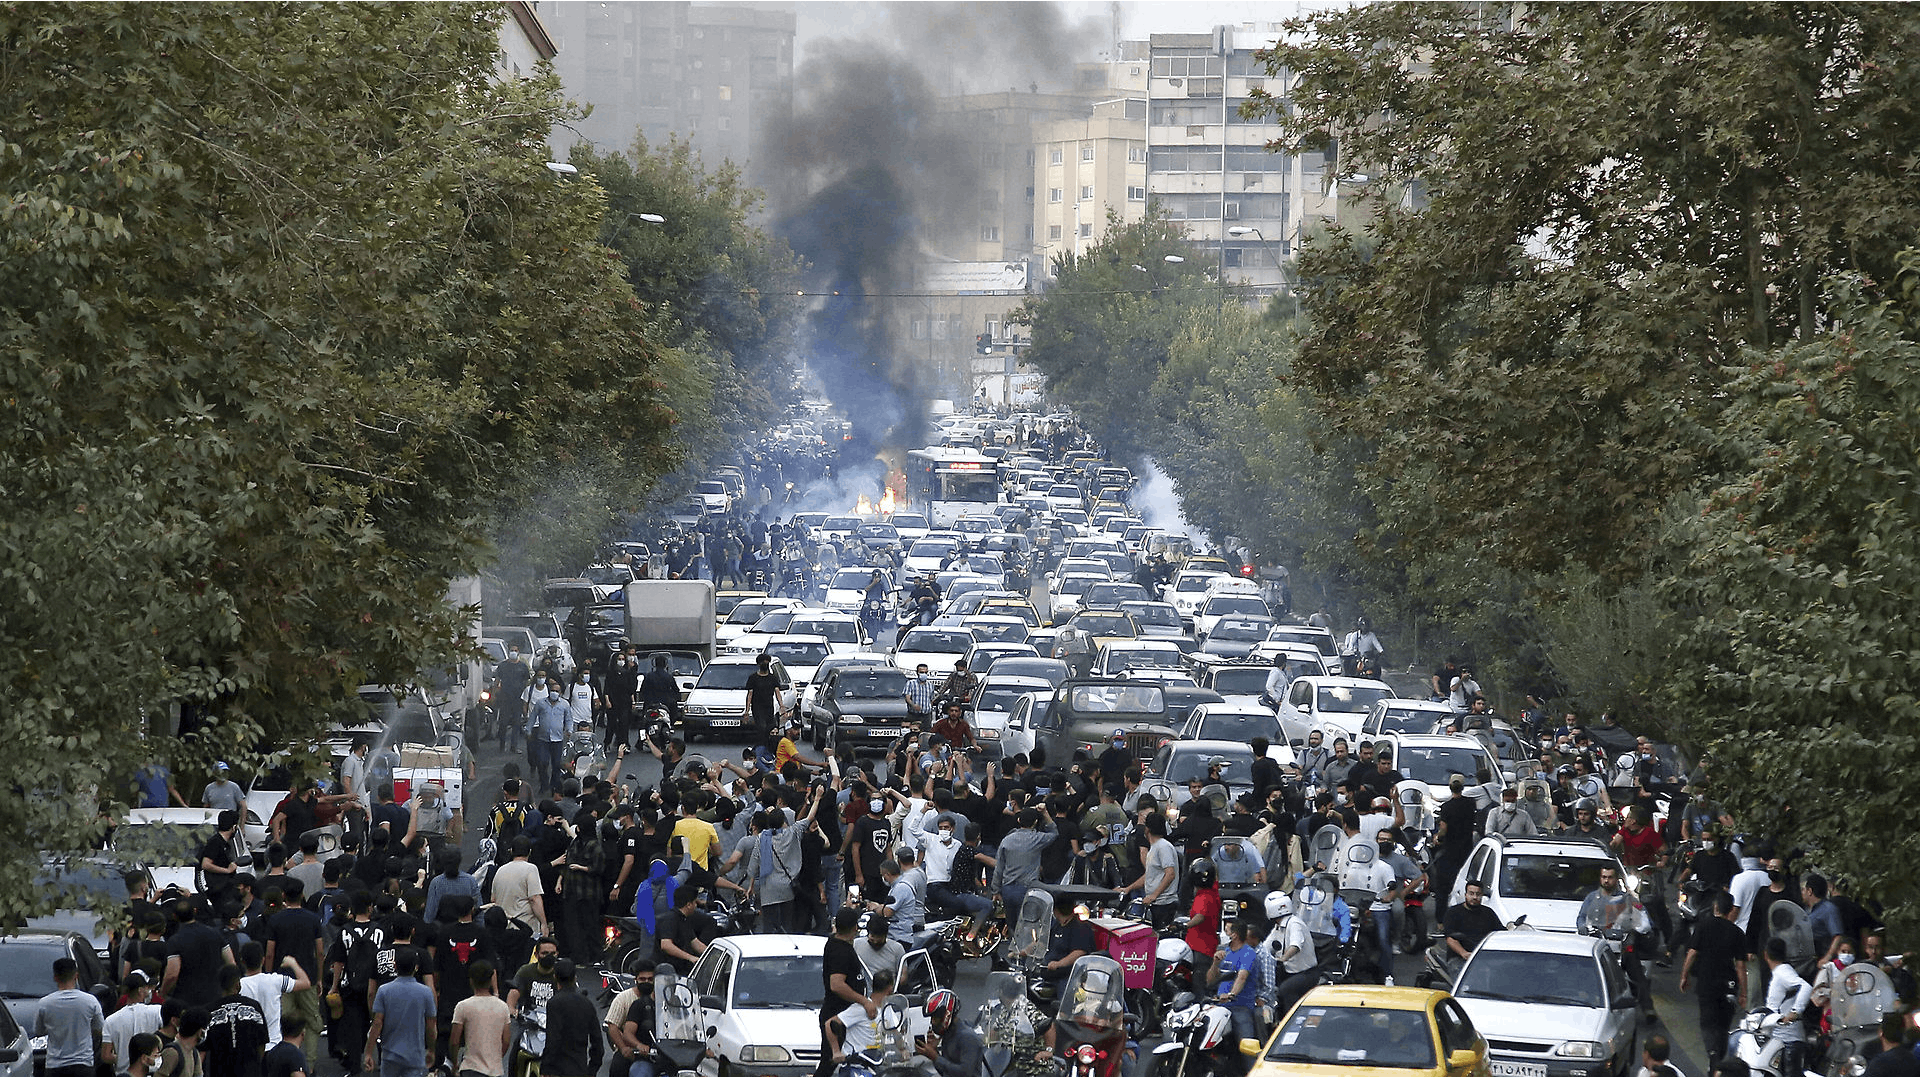 Det undertrykkende regime i Iran er bestemt ikke vilde med billeder som dette fra en demonstration i Tehran.